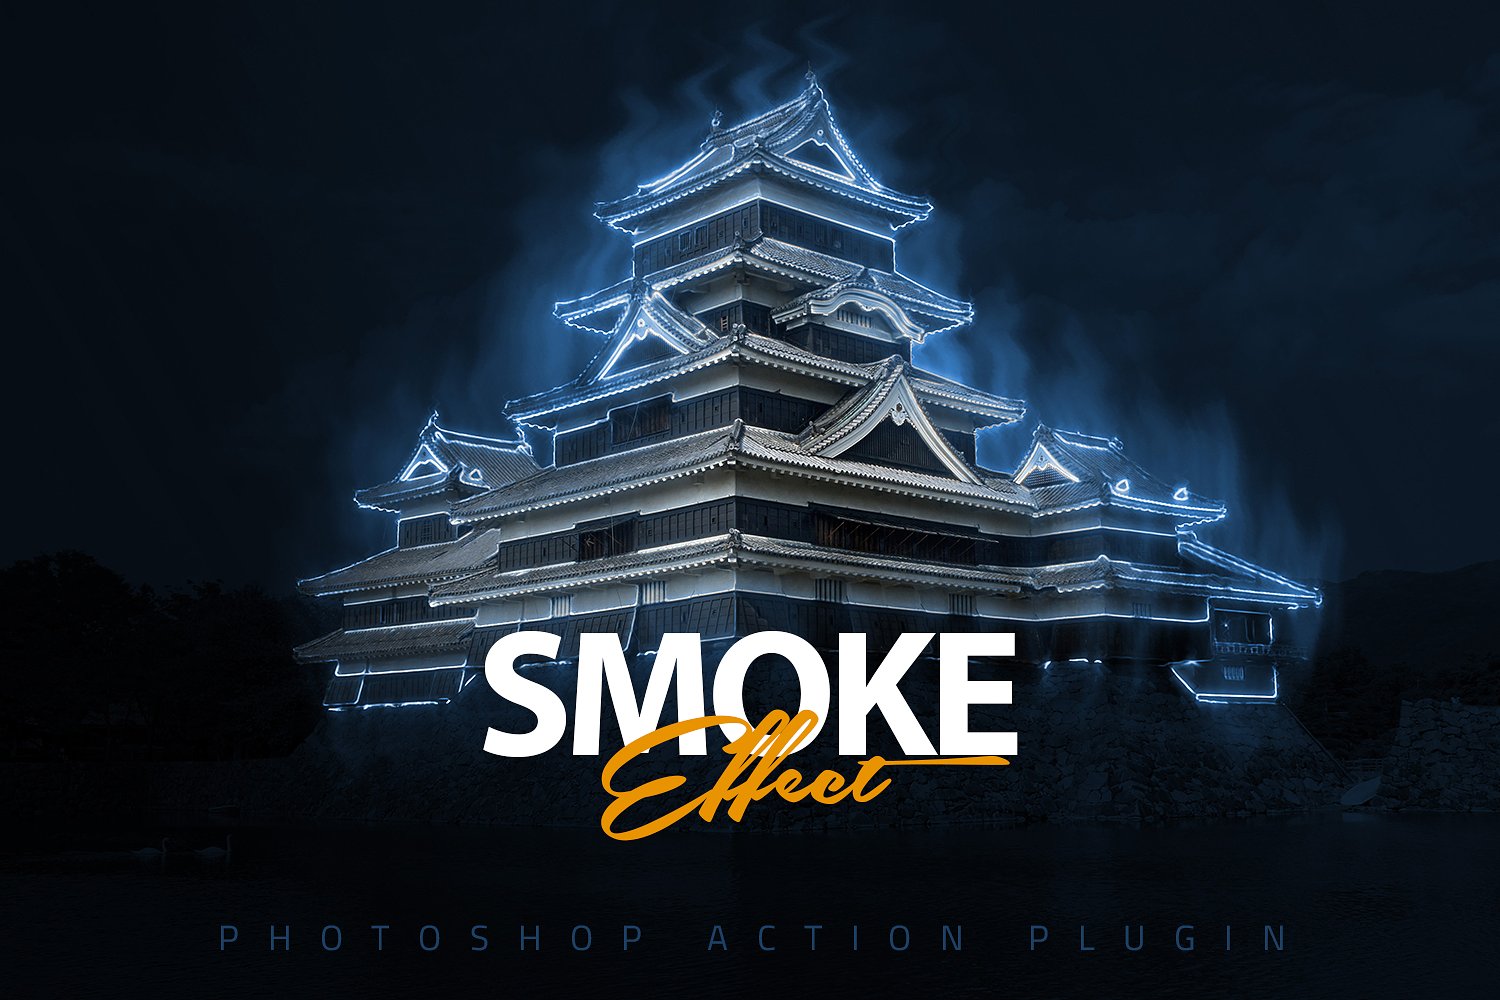 神秘的烟雾效应PS动作下载 Smoke Effect Photoshop Action [atn]插图(6)